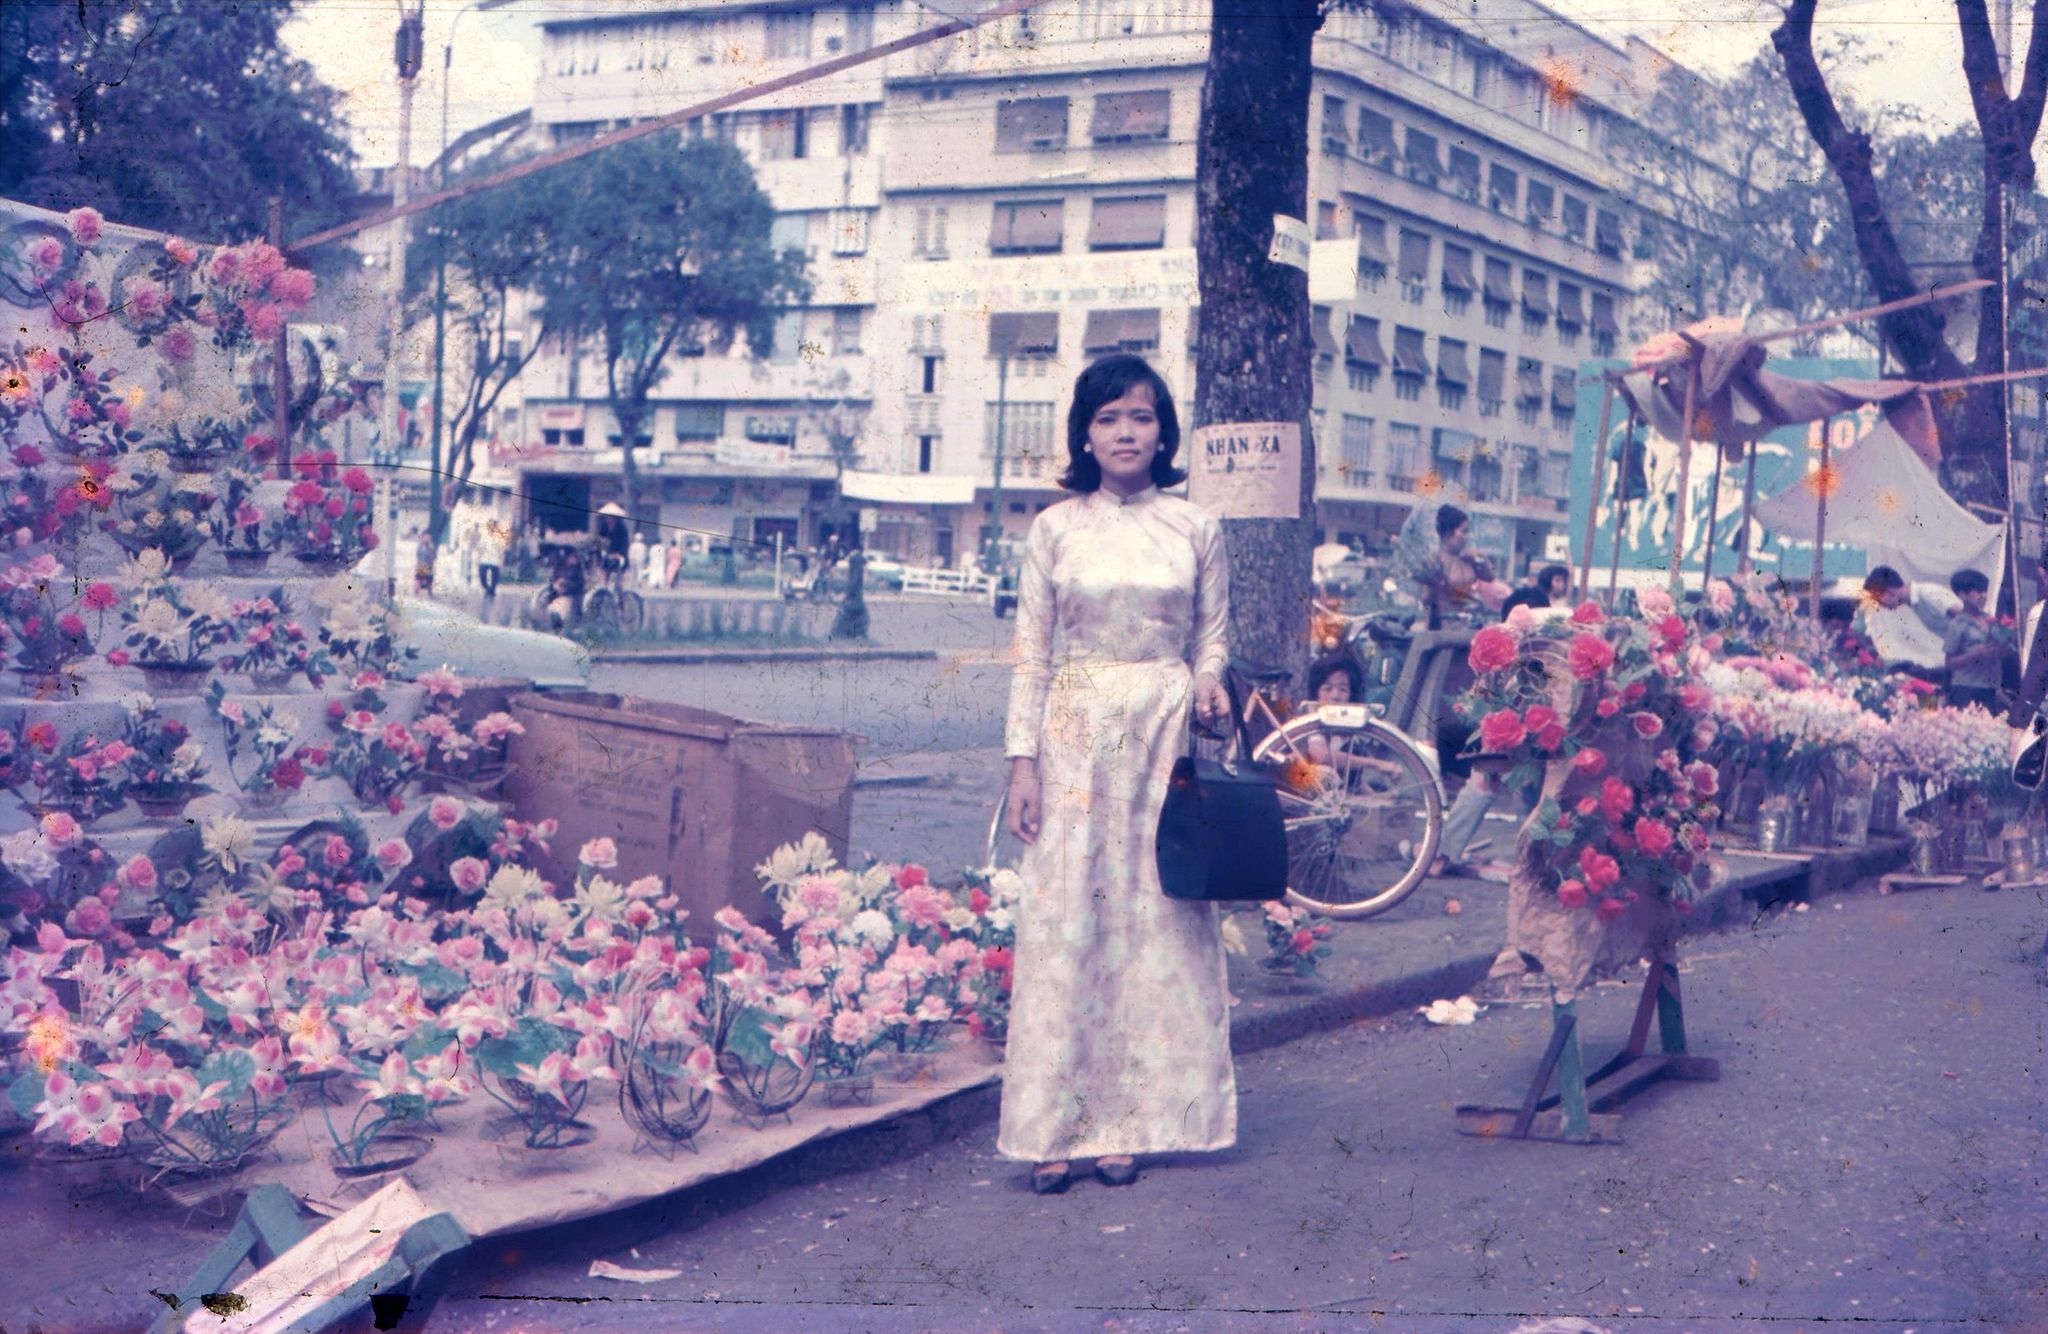 Chợ hoa ngày Tết Sài Gòn là một trong những nét đẹp truyền thống của dân tộc ta. Những hình ảnh đẹp và hoa thơm cùng không khí đón Tết sẽ mang lại cho bạn một cảm giác ngập tràn tình yêu và nhuần nhuyễn.